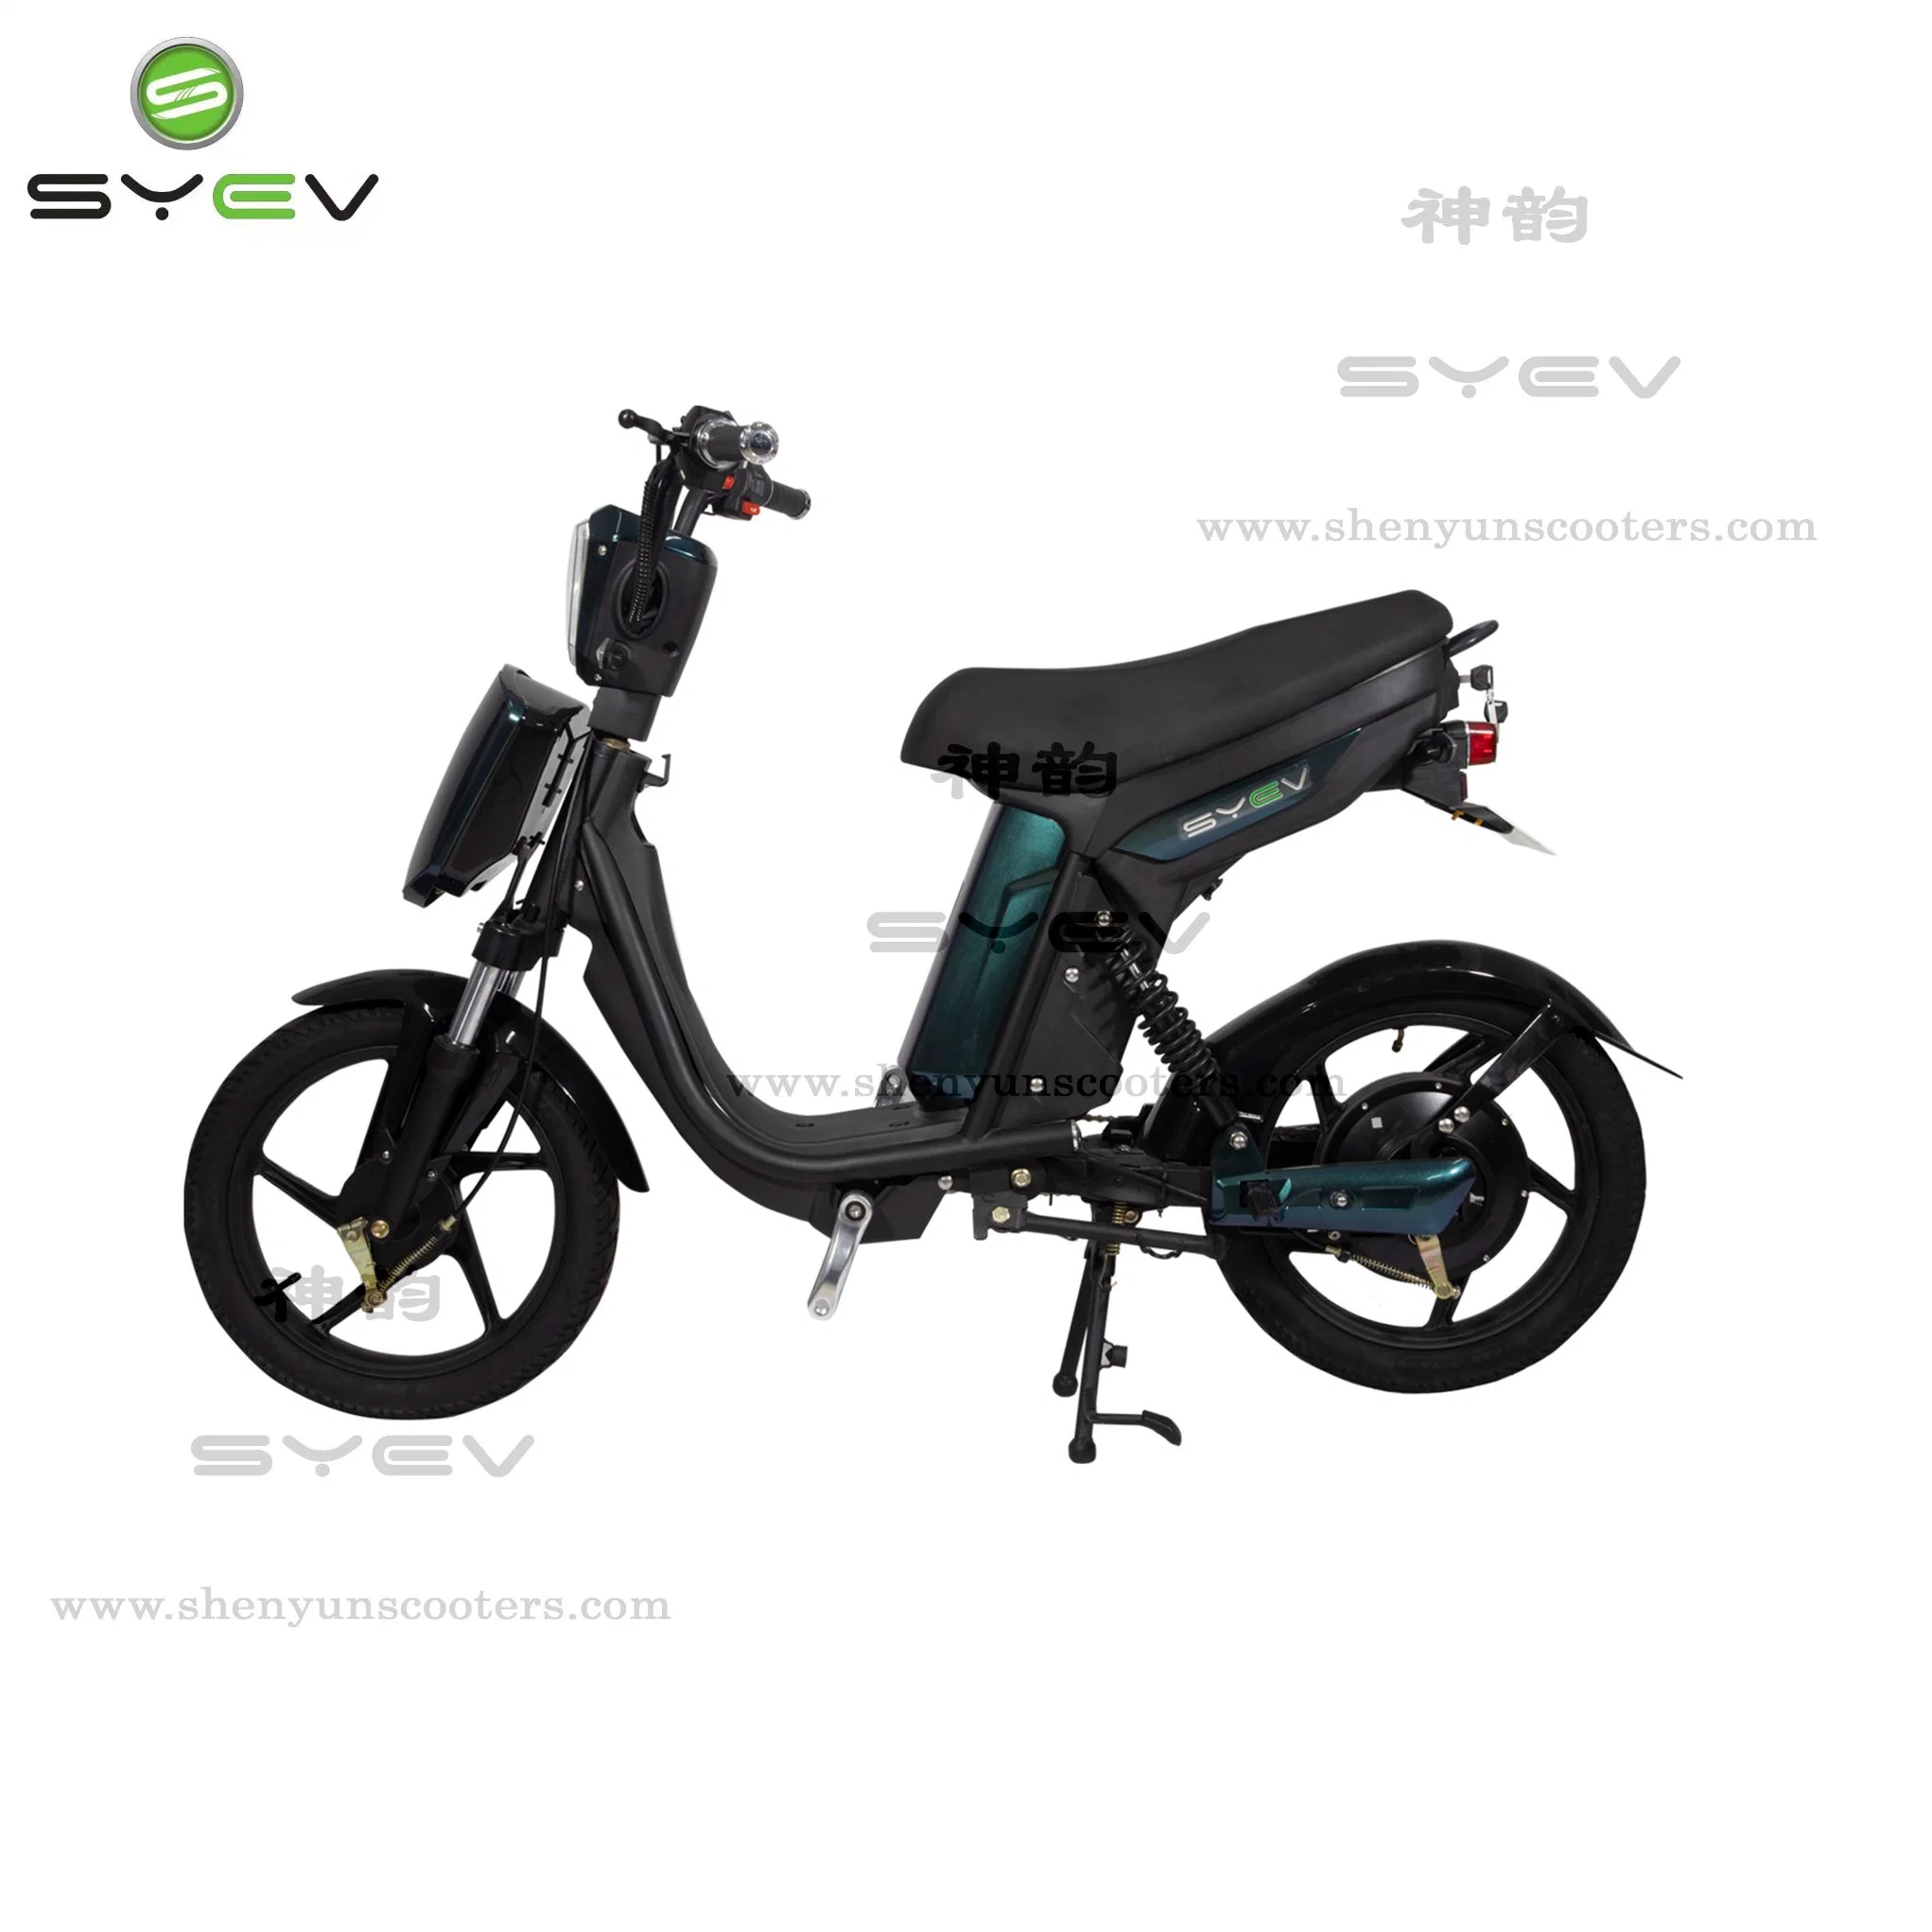 سيف توب بيع دراجة كهربائية عالية الجودة بقوة 350 واط وعجلتين بسعر رخيص سكوتر كهربائي.